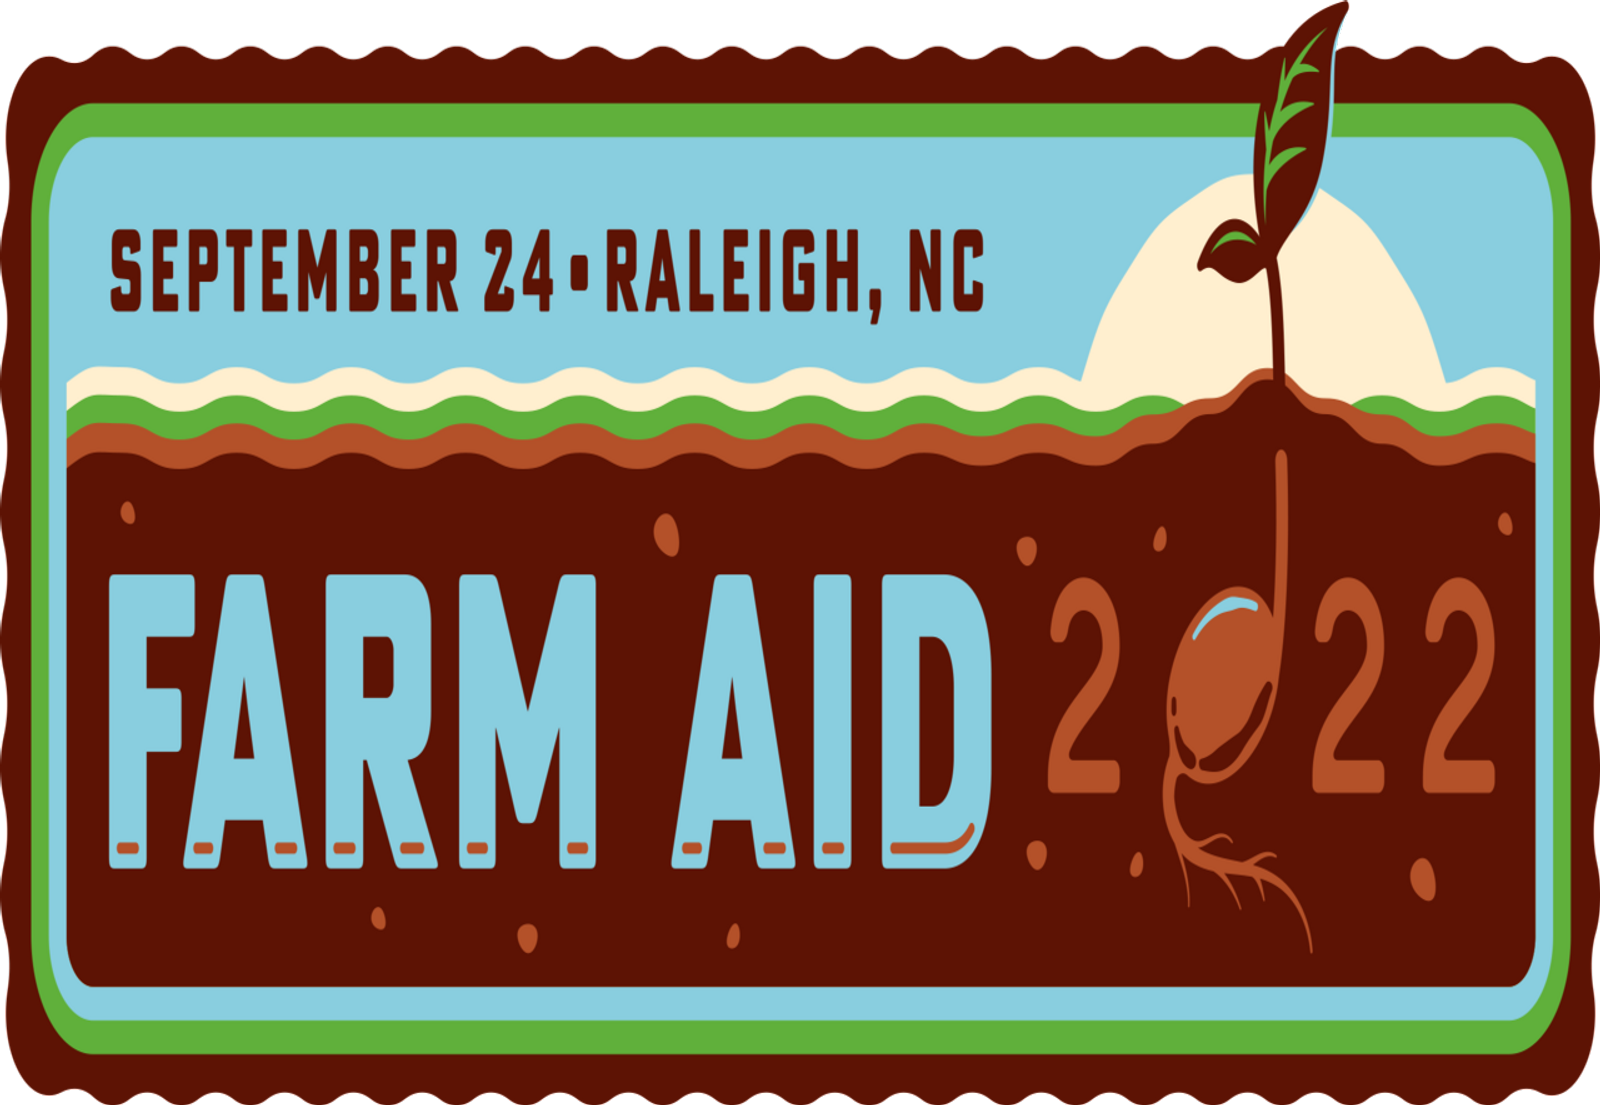 Mellencamp.com Farm Aid 2022 Ticket Details